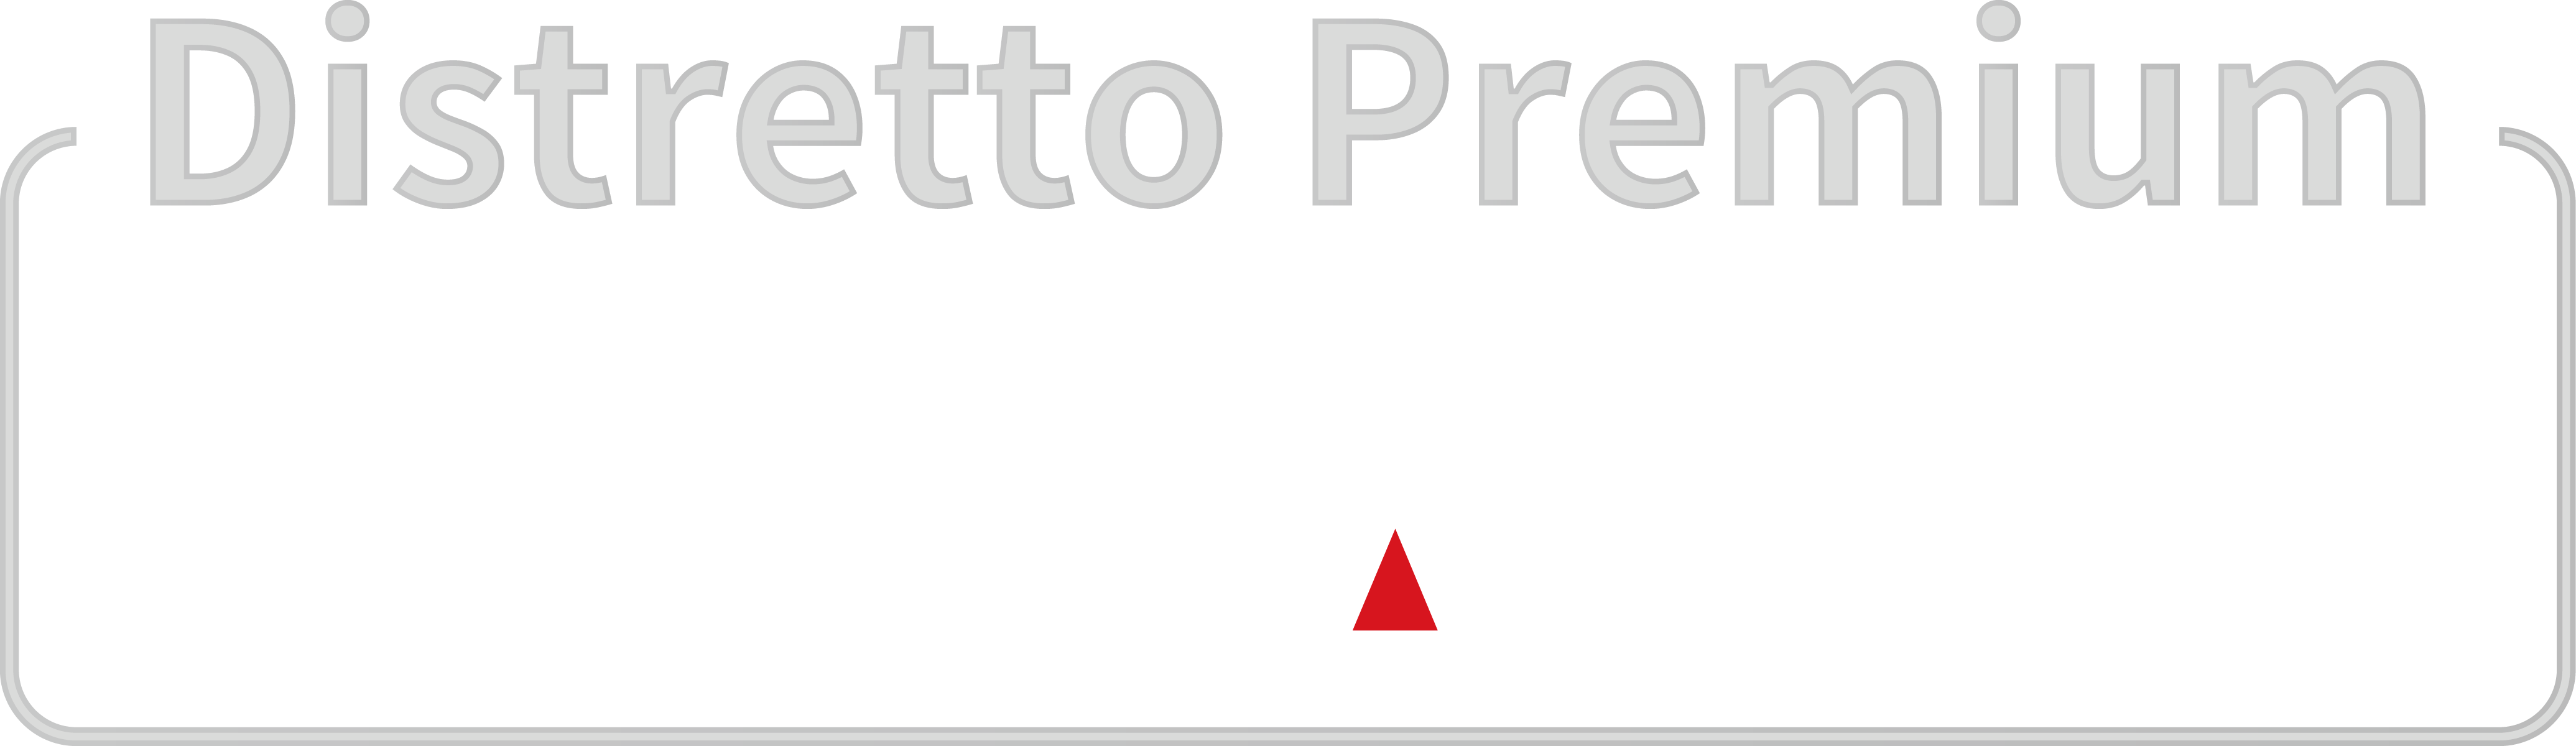 Distretto Premium - Distretto Casa Agenzie - 1